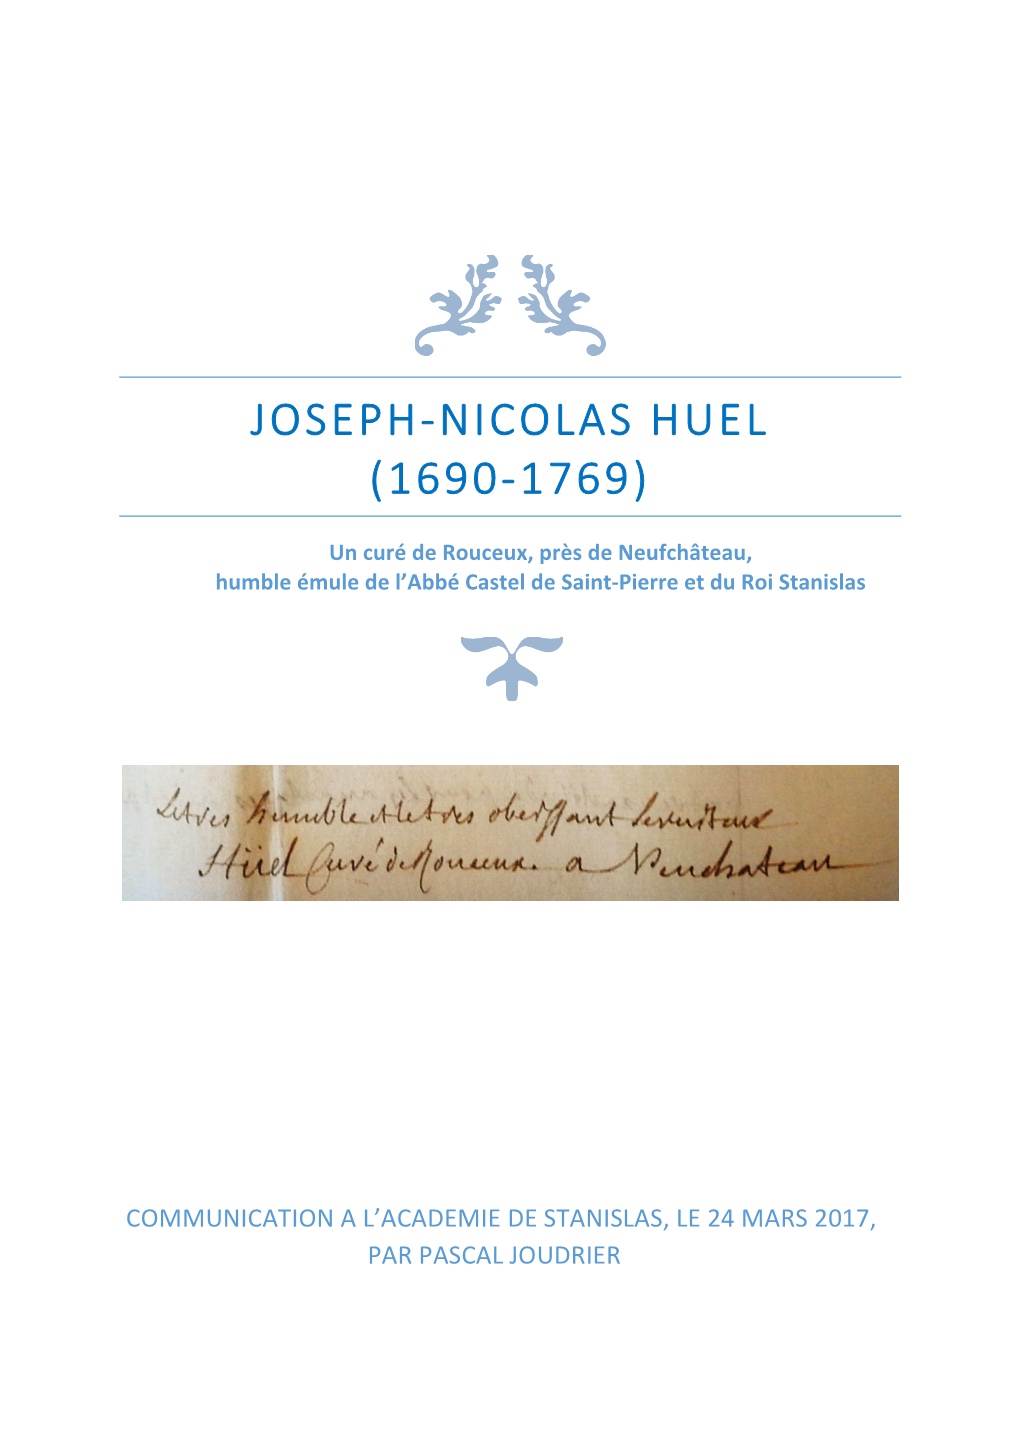 Joseph-Nicolas Huel (1690-1769)